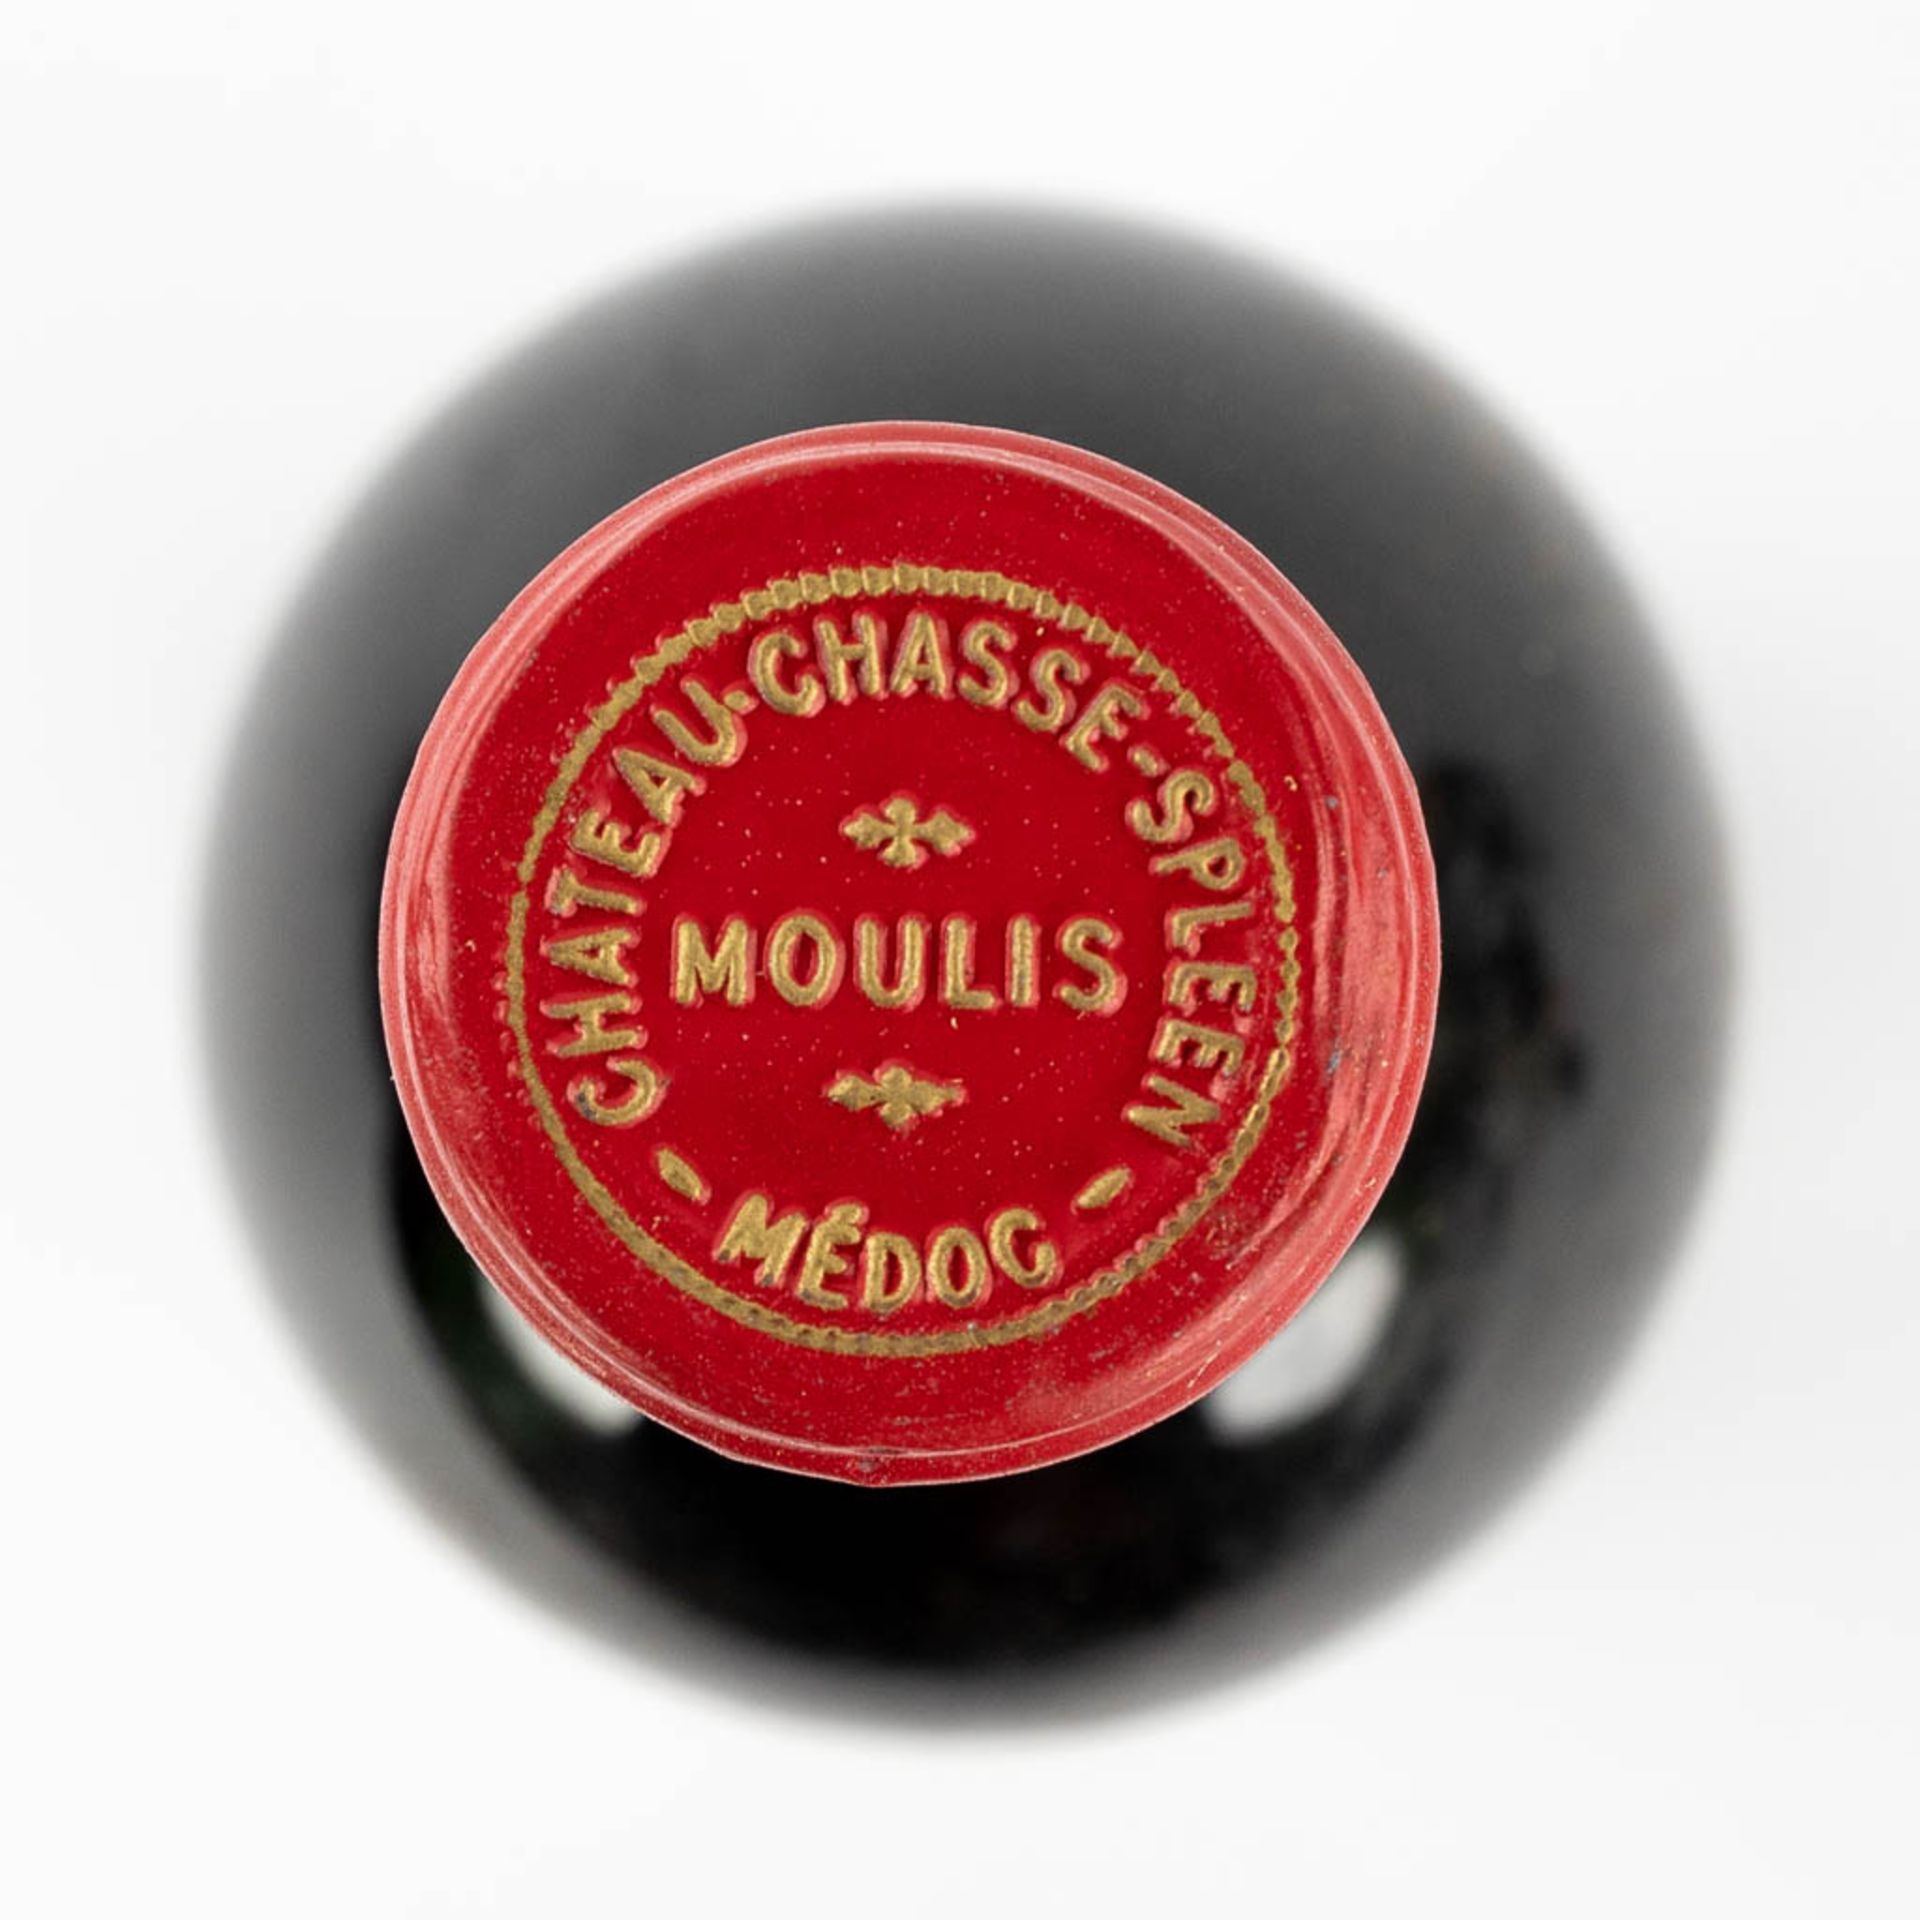 Château Chasse Spleen Mouilis en Médoc, 1974, 4 bottles. Château La Lagune Haut Médoc 1983, 1 bottle - Bild 13 aus 22